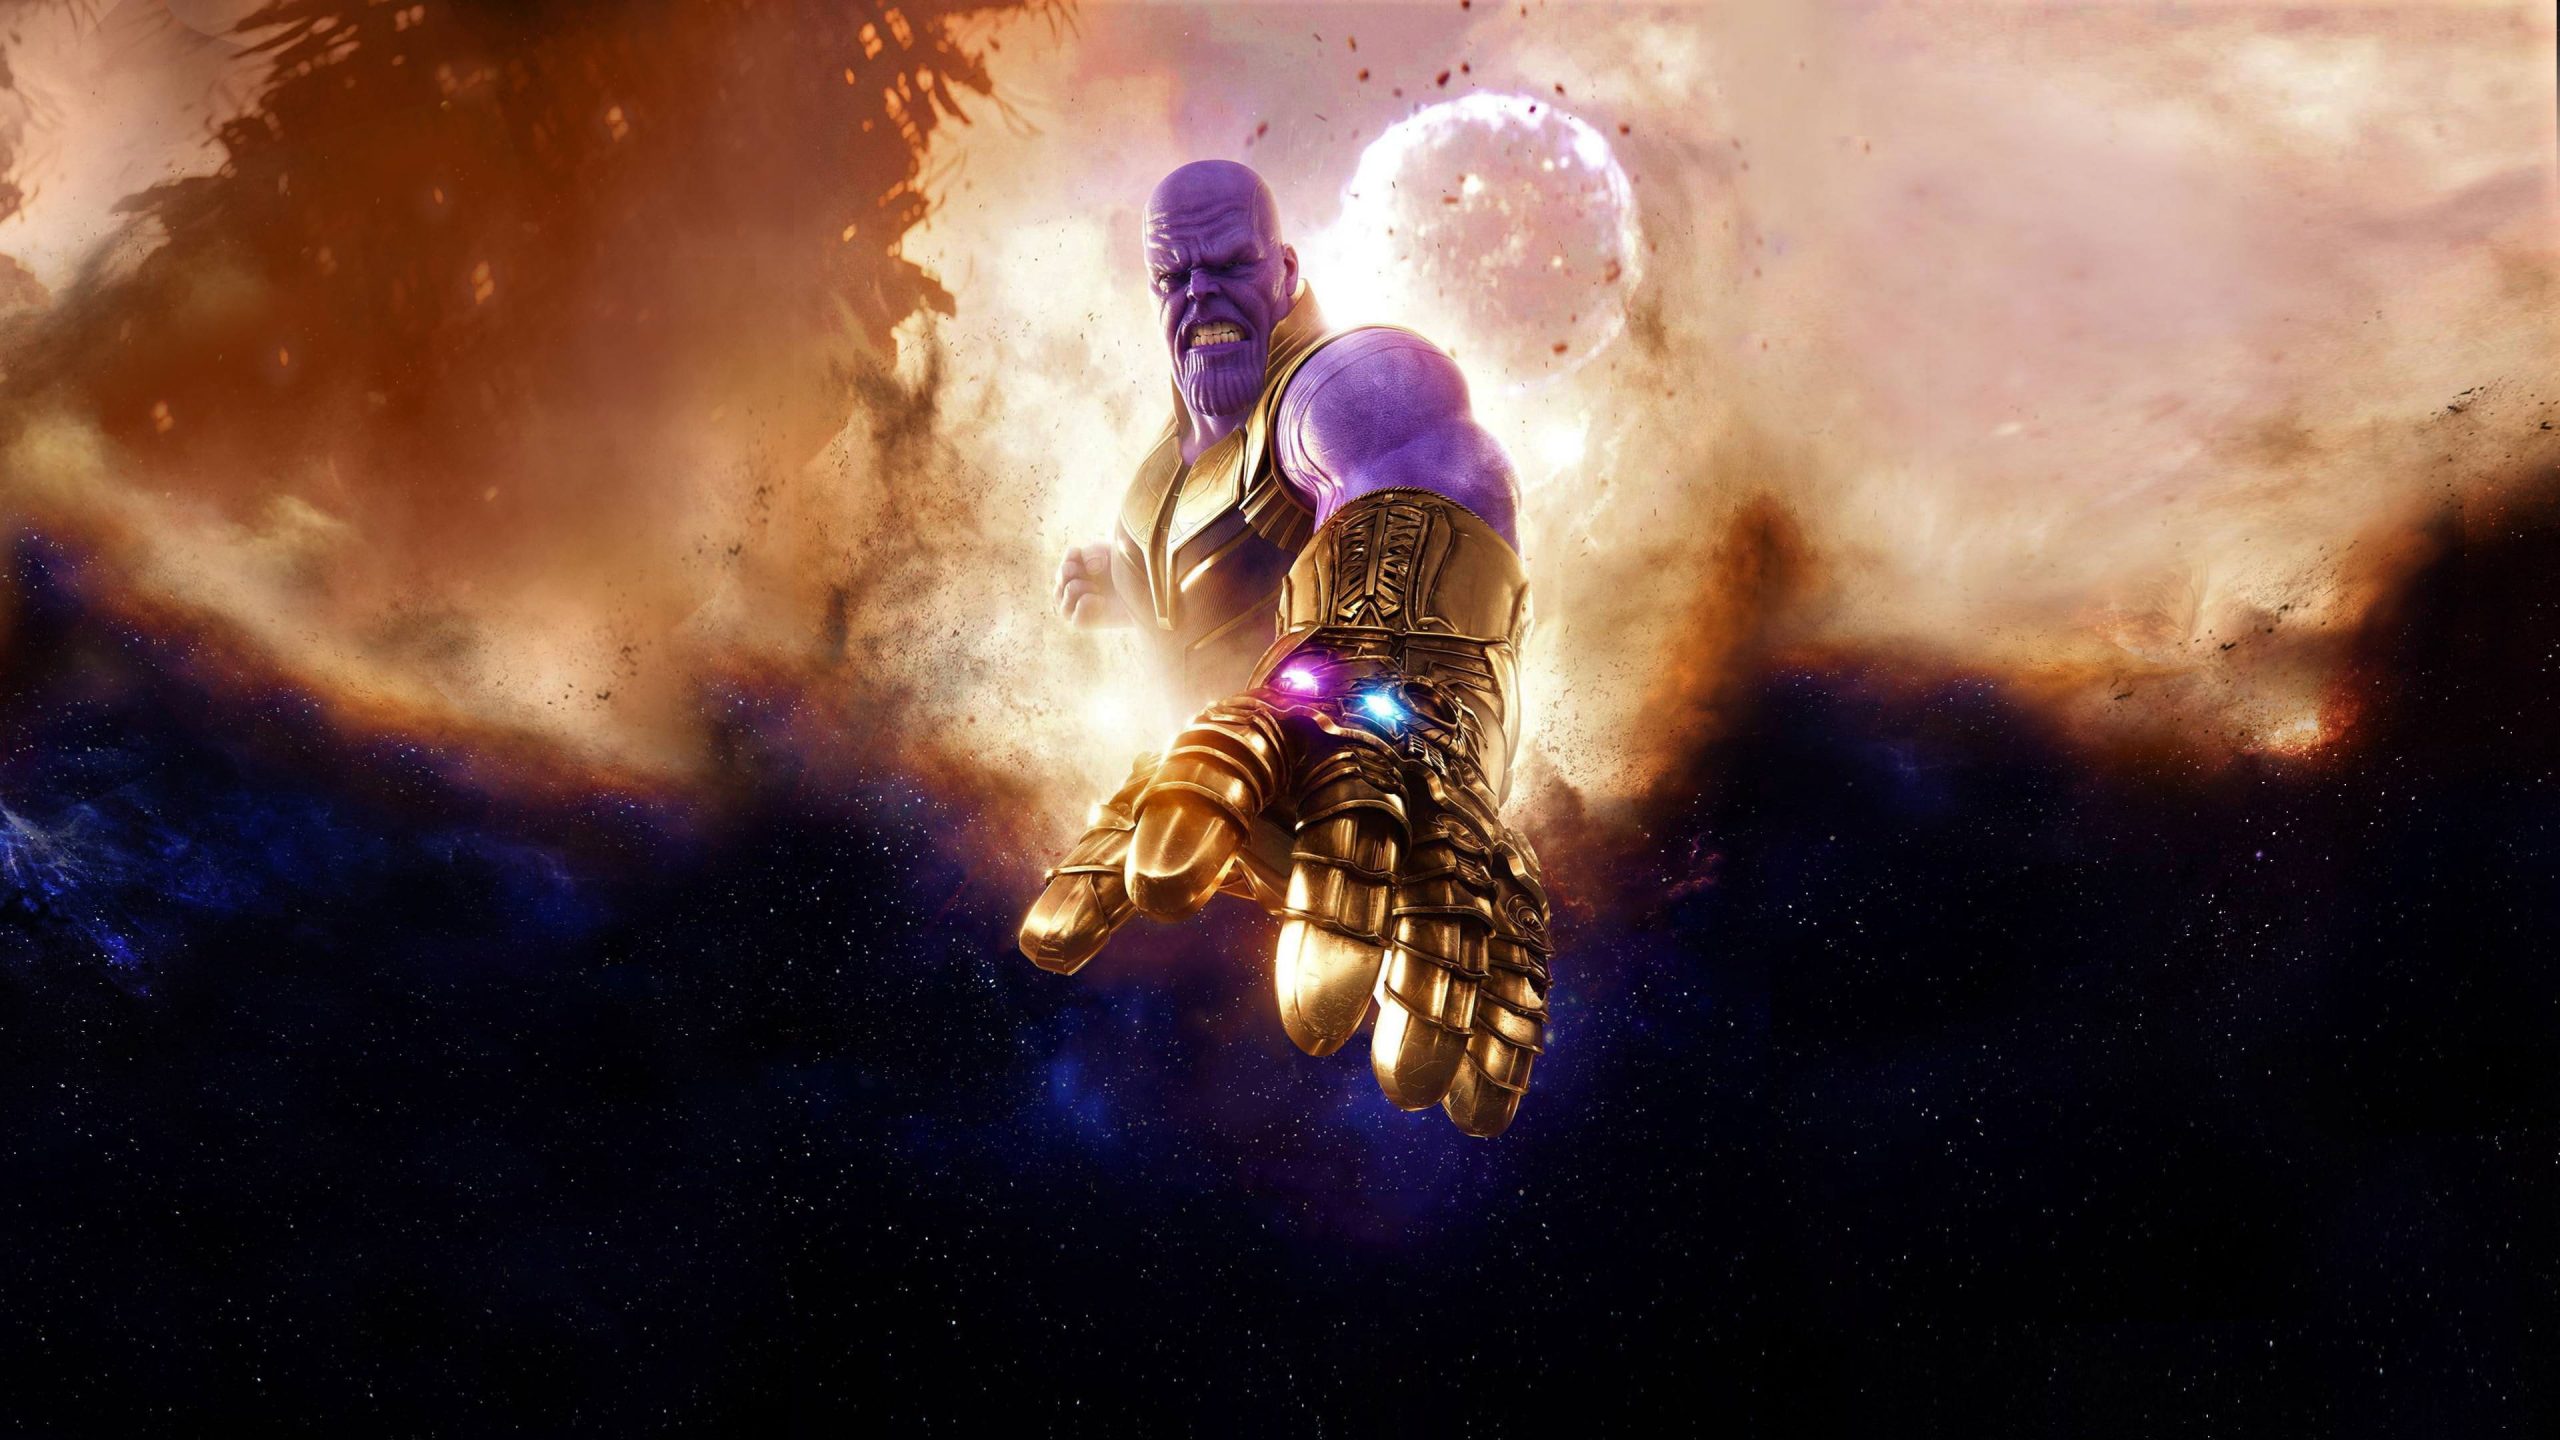 Wallpaper Avengers Infinity War, Thanos, 4k